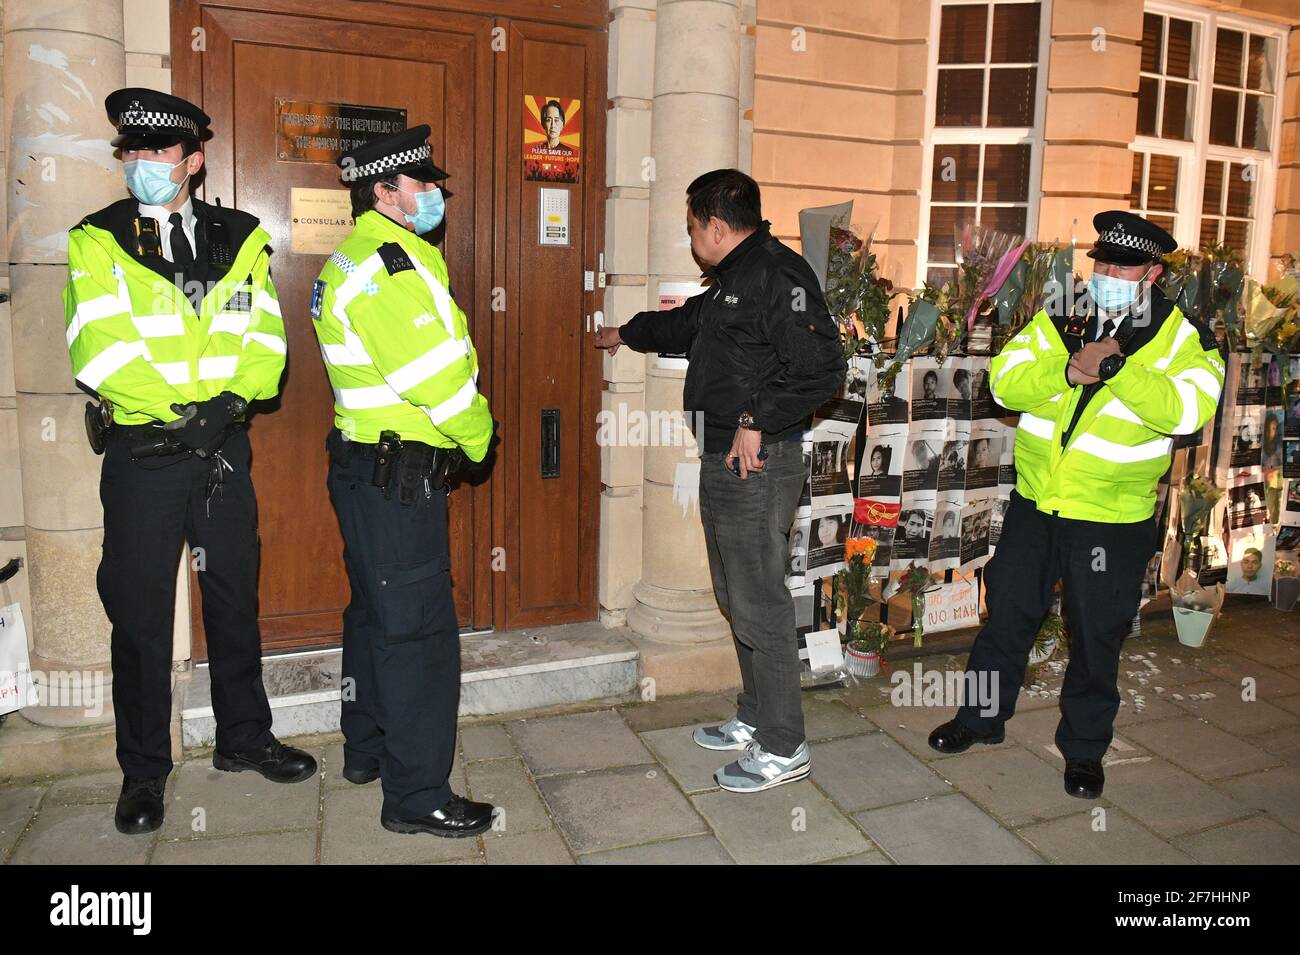 L'ambasciatore del Myanmar nel Regno Unito Kyaw Zwar Minn cerca senza successo di entrare nell'ambasciata del Myanmar a Mayfair, Londra. Data immagine: Mercoledì 7 aprile 2021. Foto Stock